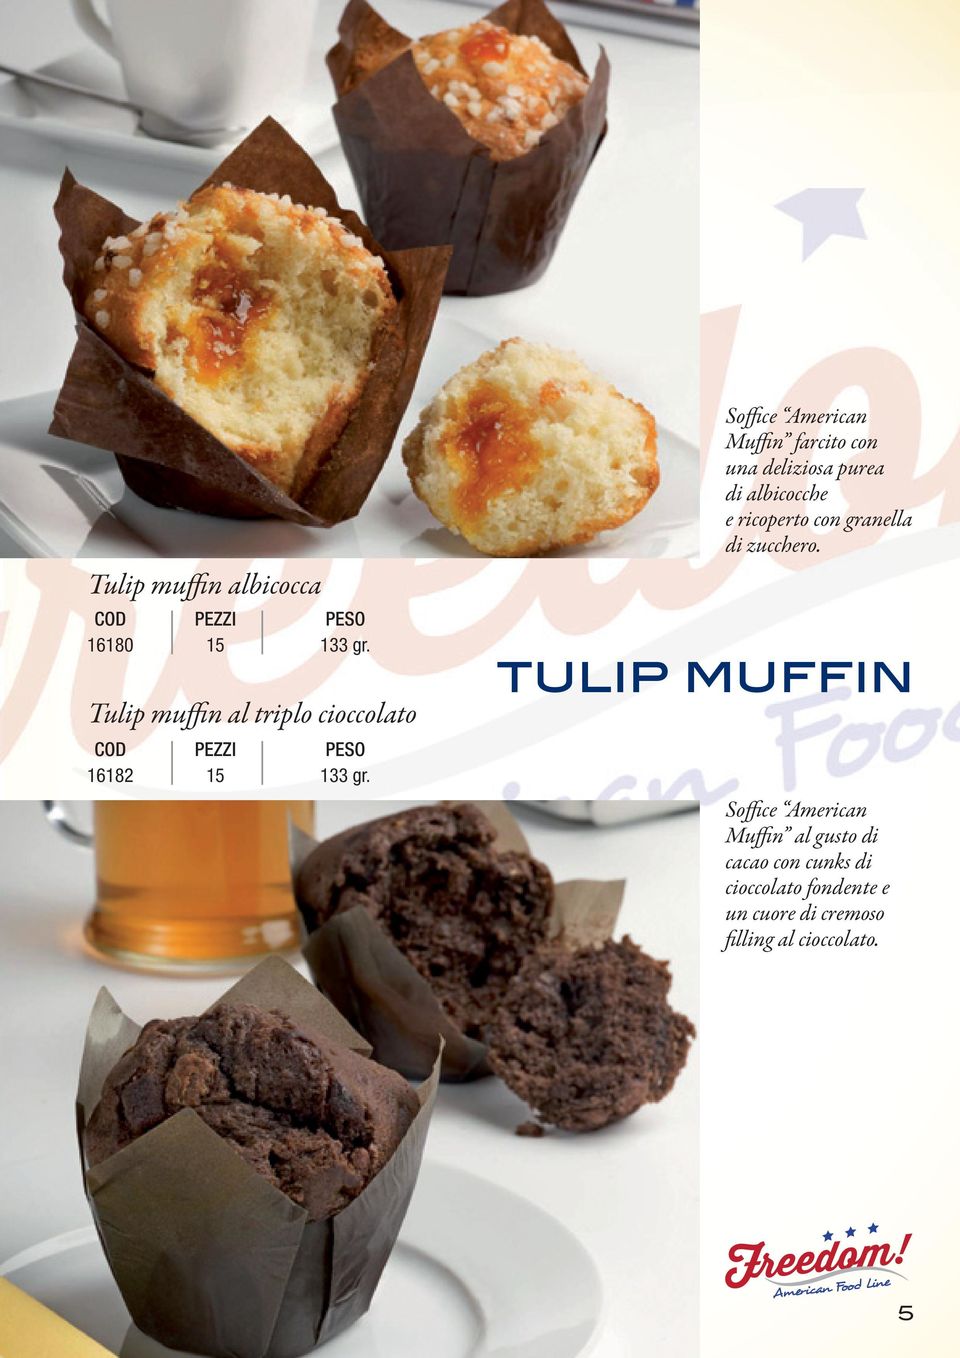 Soffice American Muffin farcito con una deliziosa purea di albicocche e ricoperto